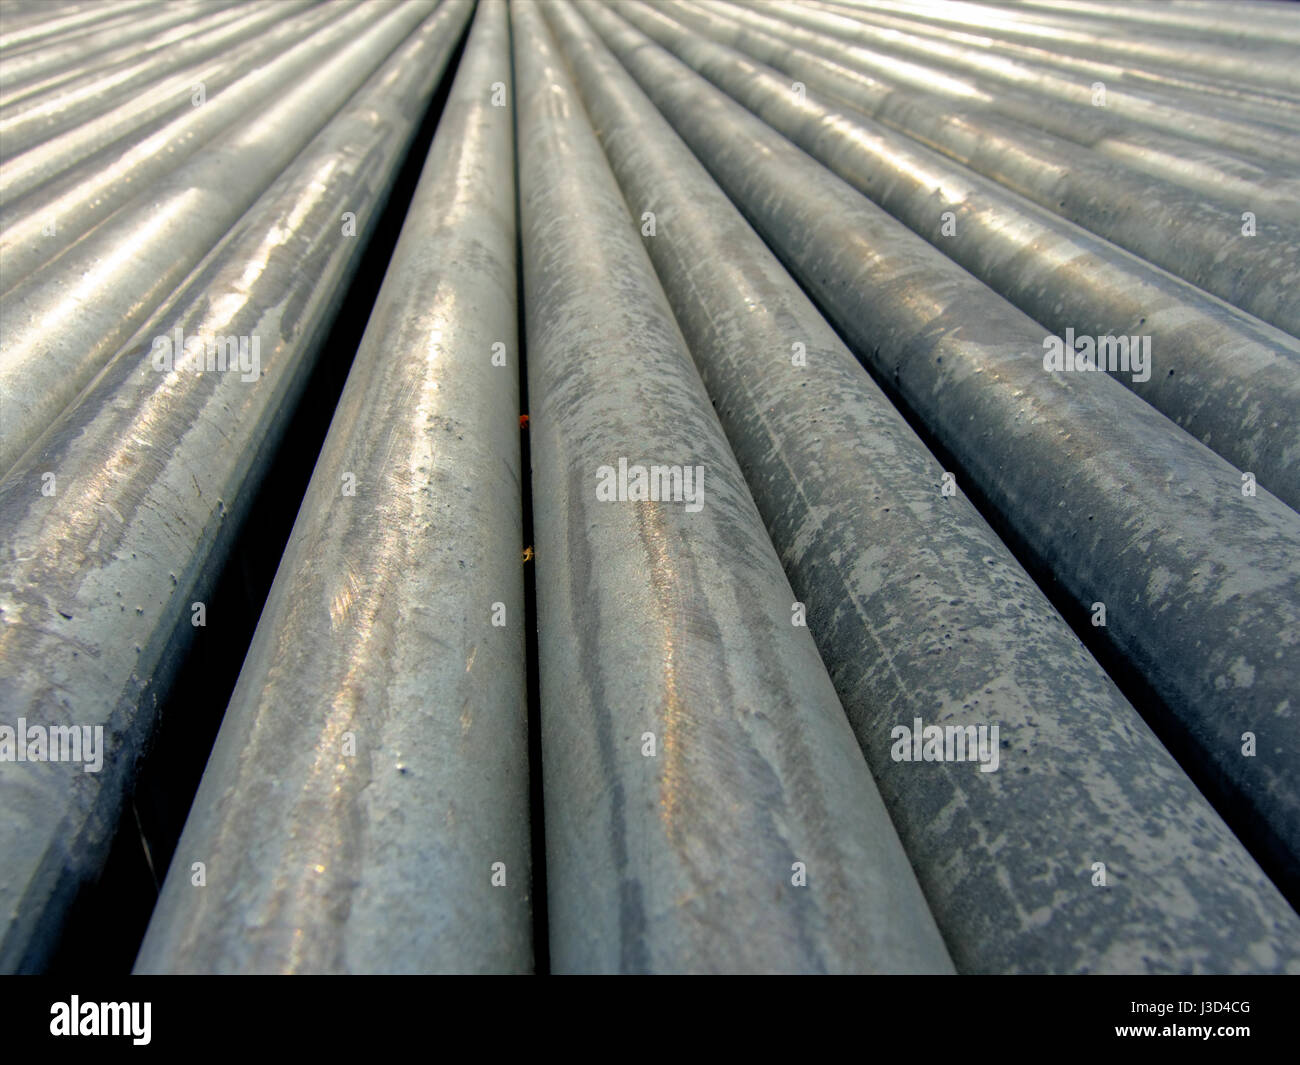 Fondos y texturas: grupo grande de tubos de acero recubierto de zinc, disminuyendo la perspectiva Foto de stock